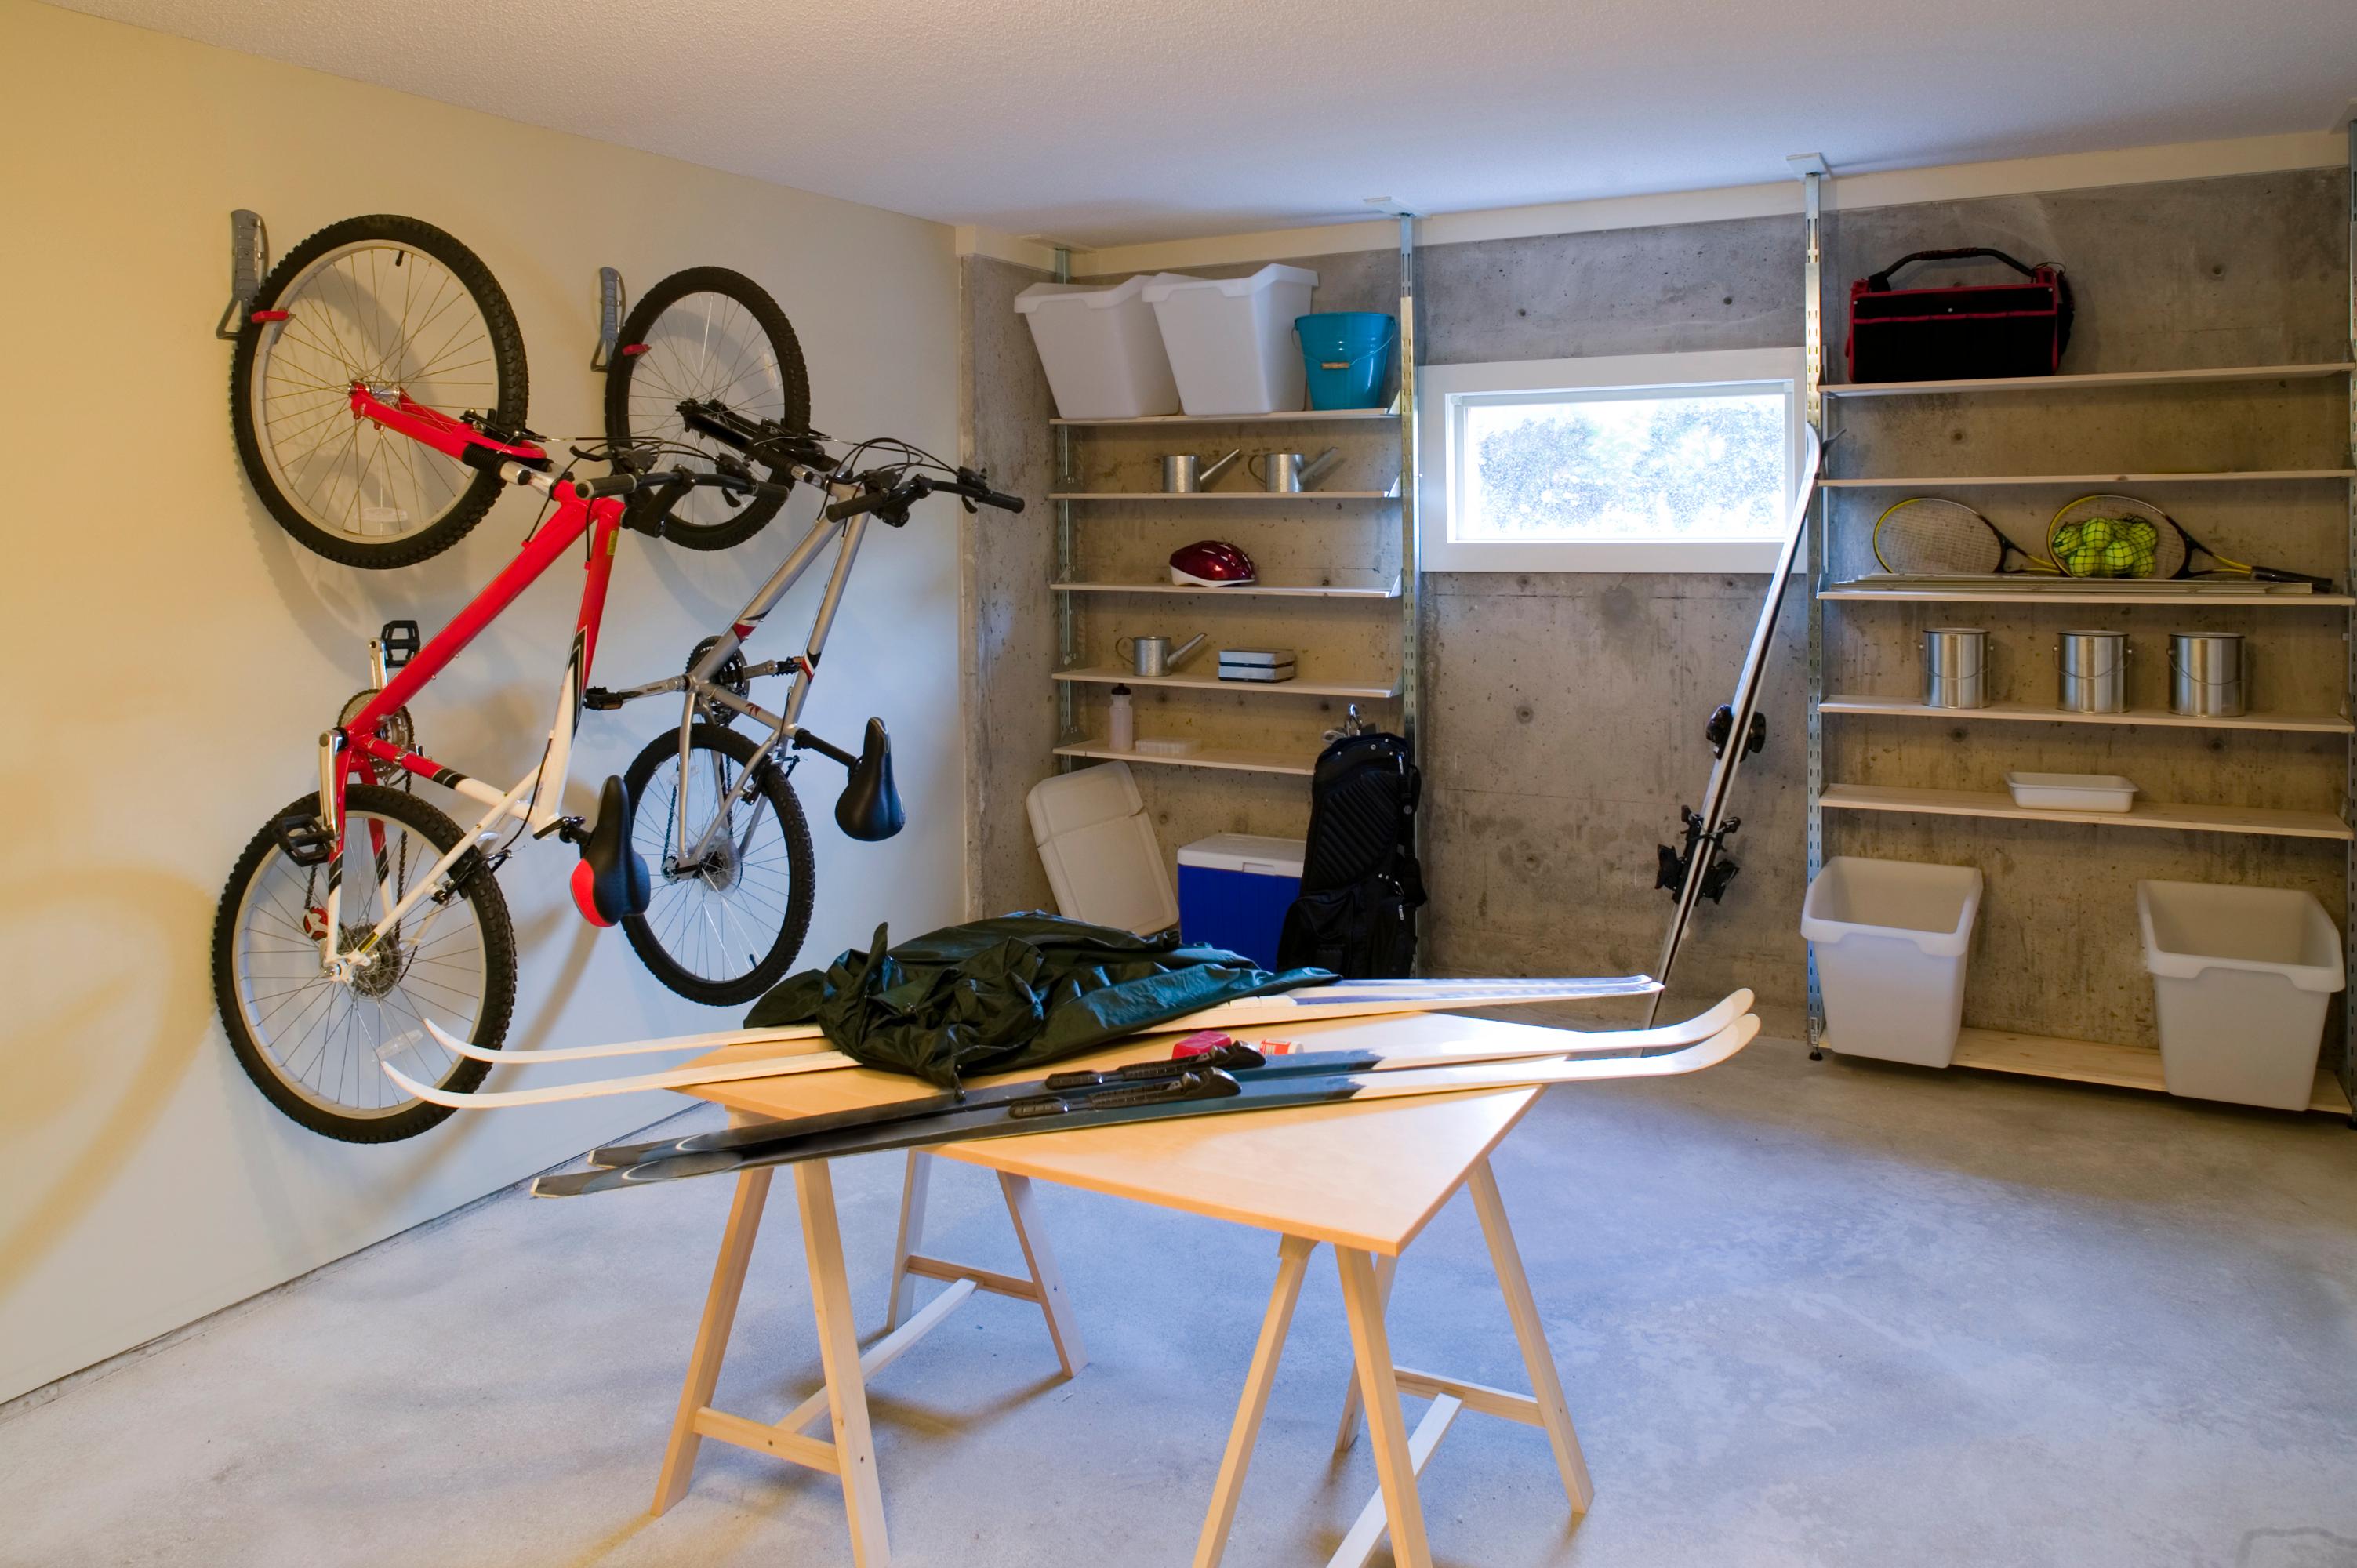 Ist das Haus unterkellert, findet sich mehr Platz um Freizeitgeräte wie Fahrräder zu verstauen